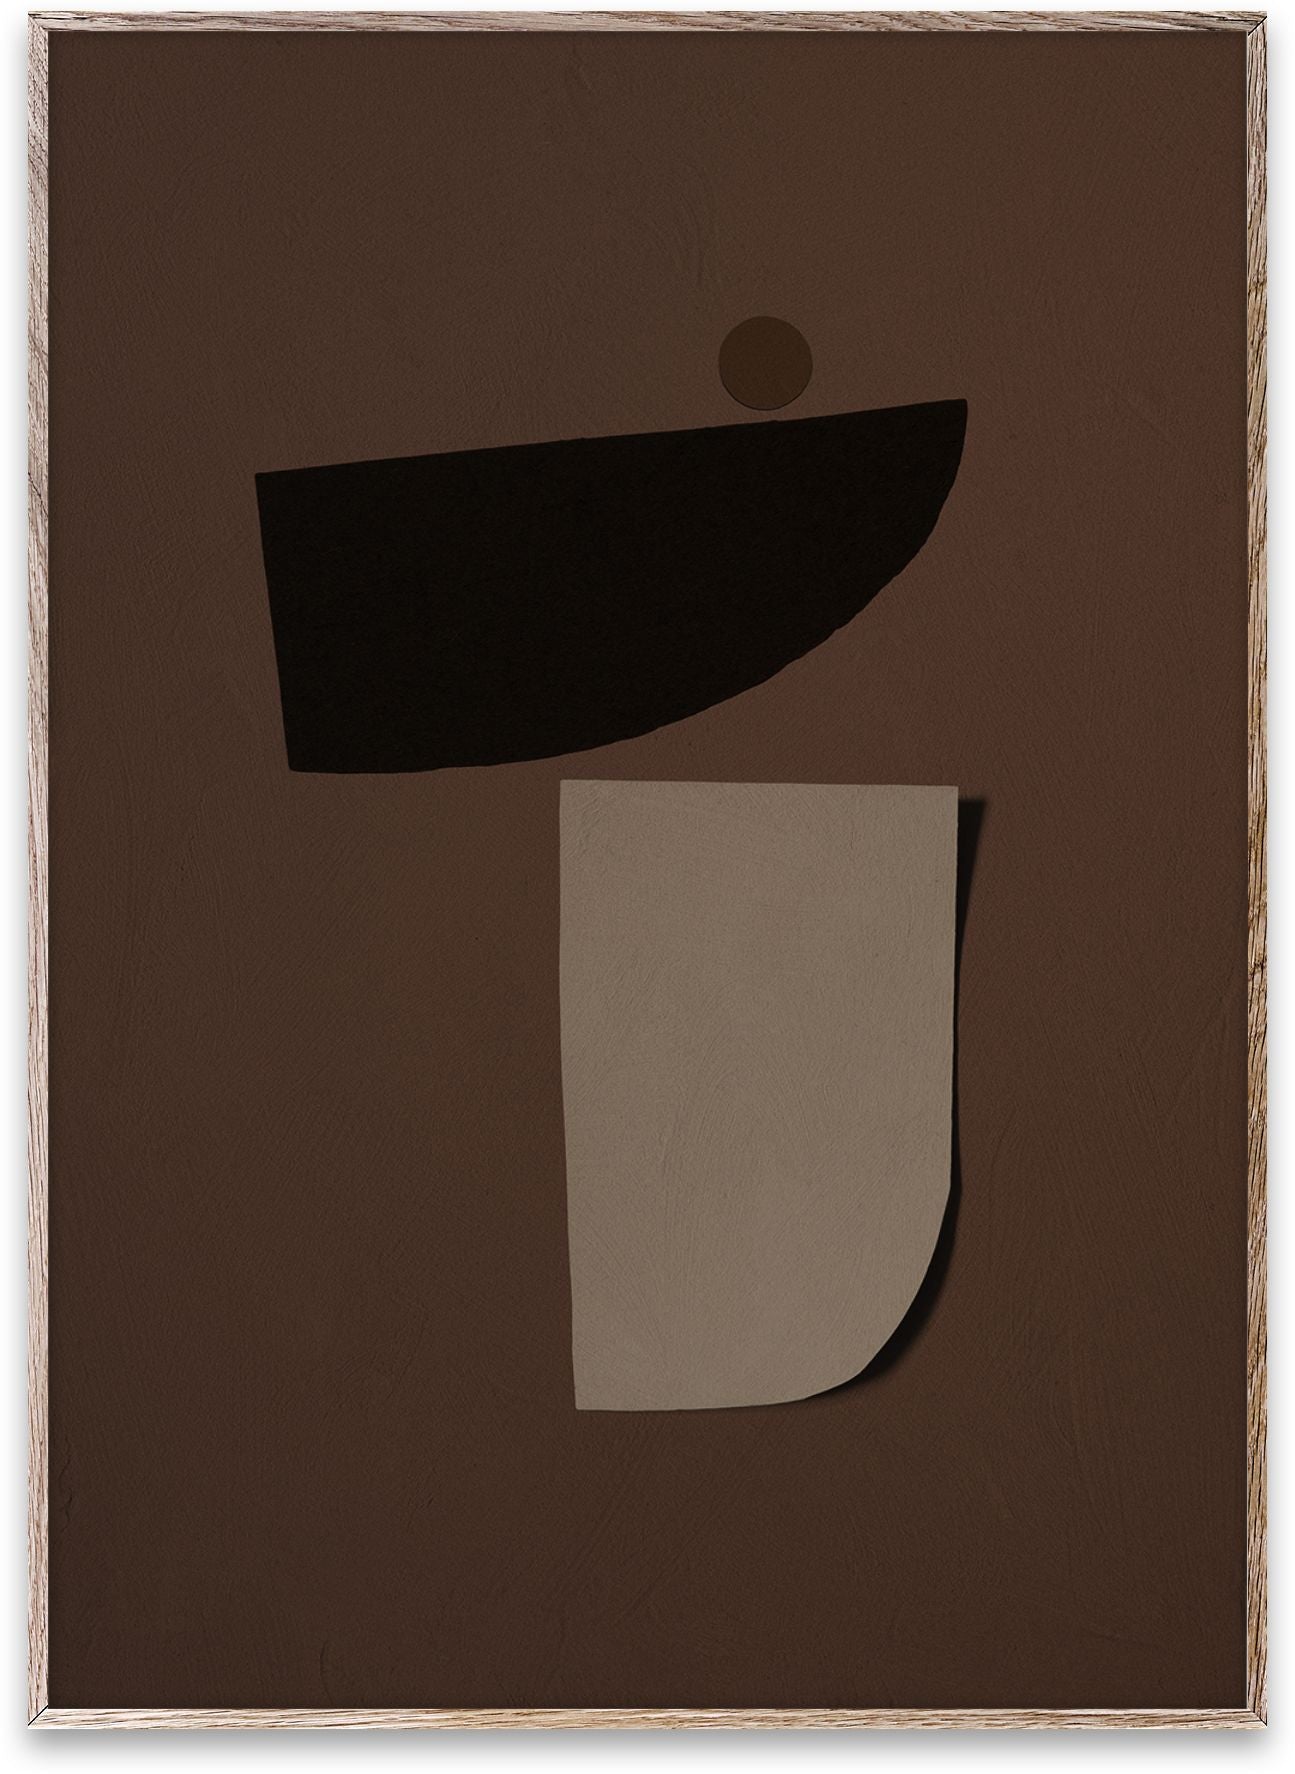 Pappers kollektiv tipppunkt 03 -affisch, 50x70 cm